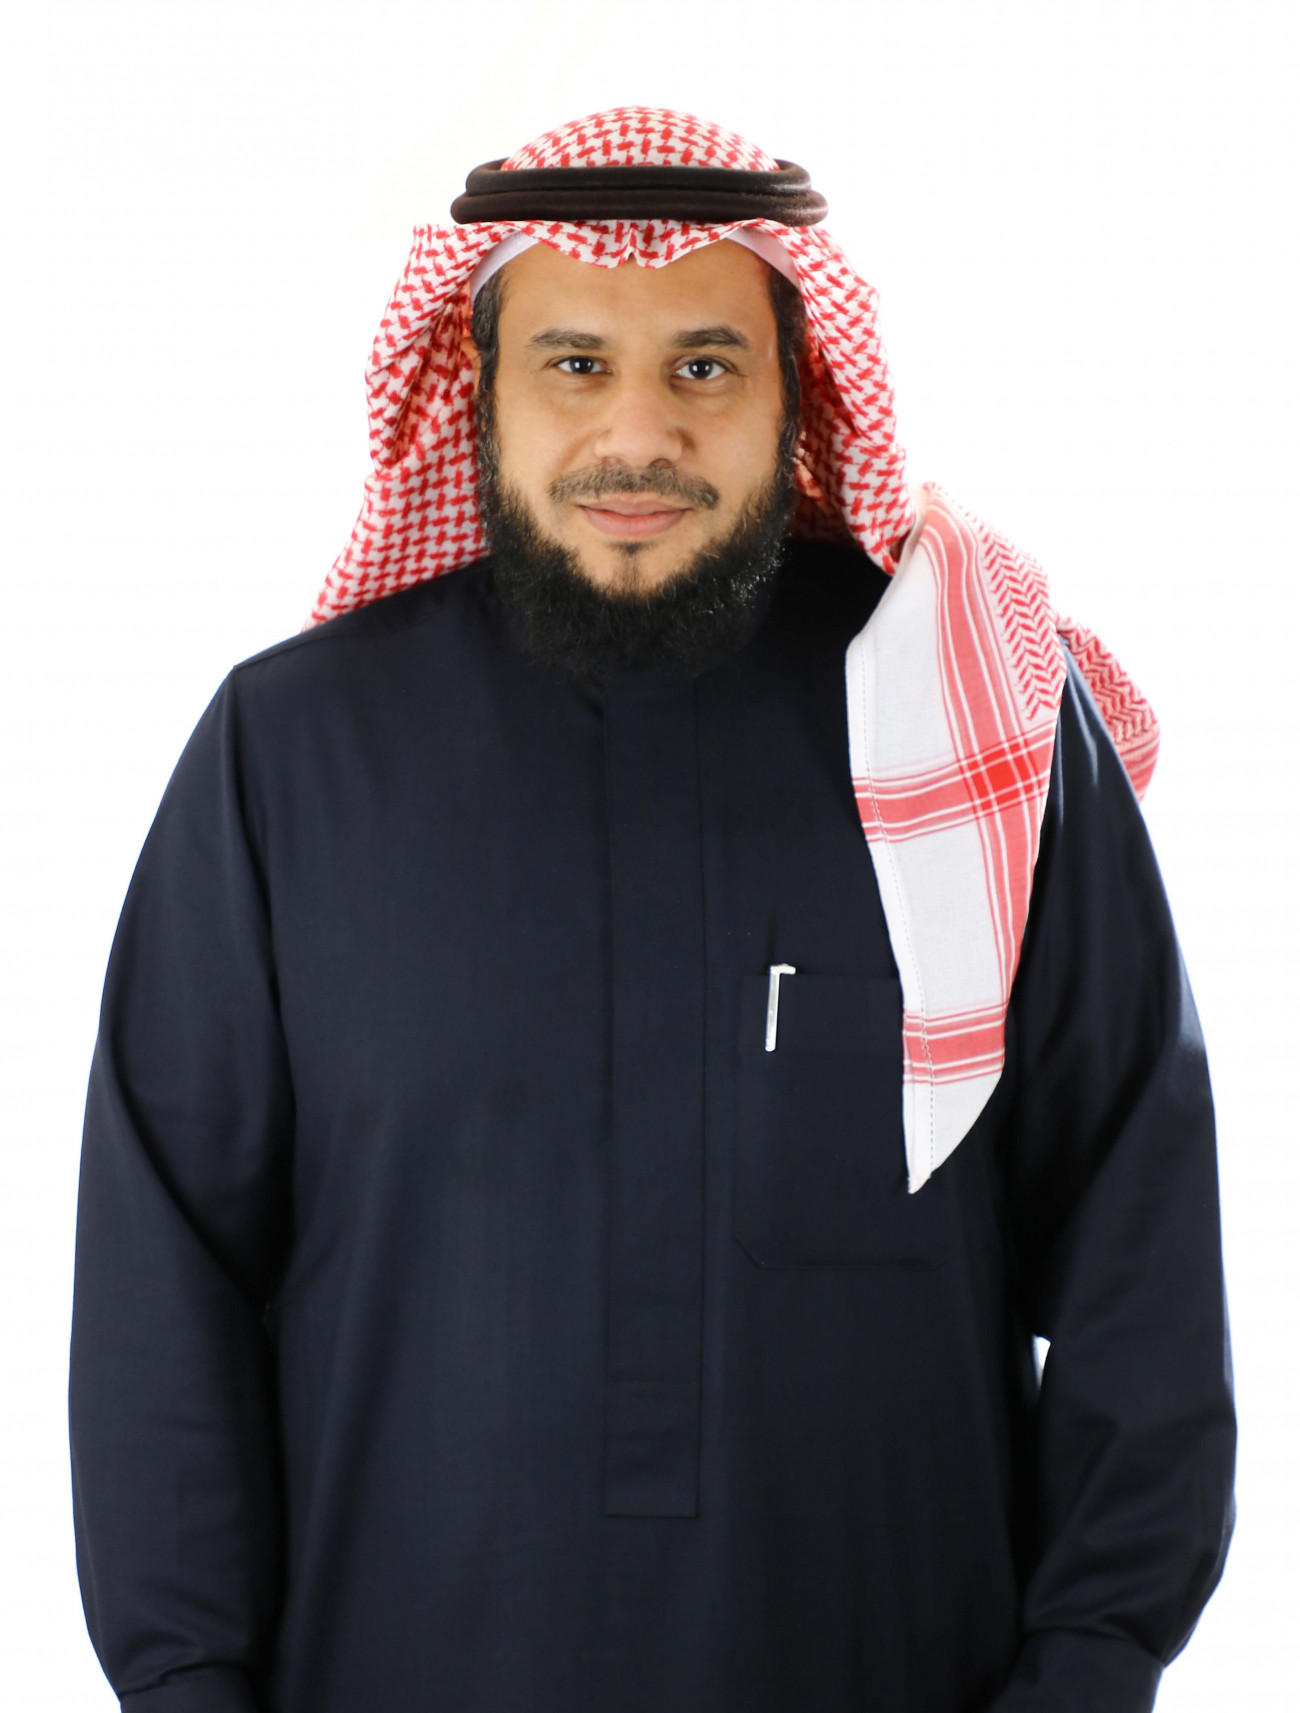 Riyadh Ali Alghamdi